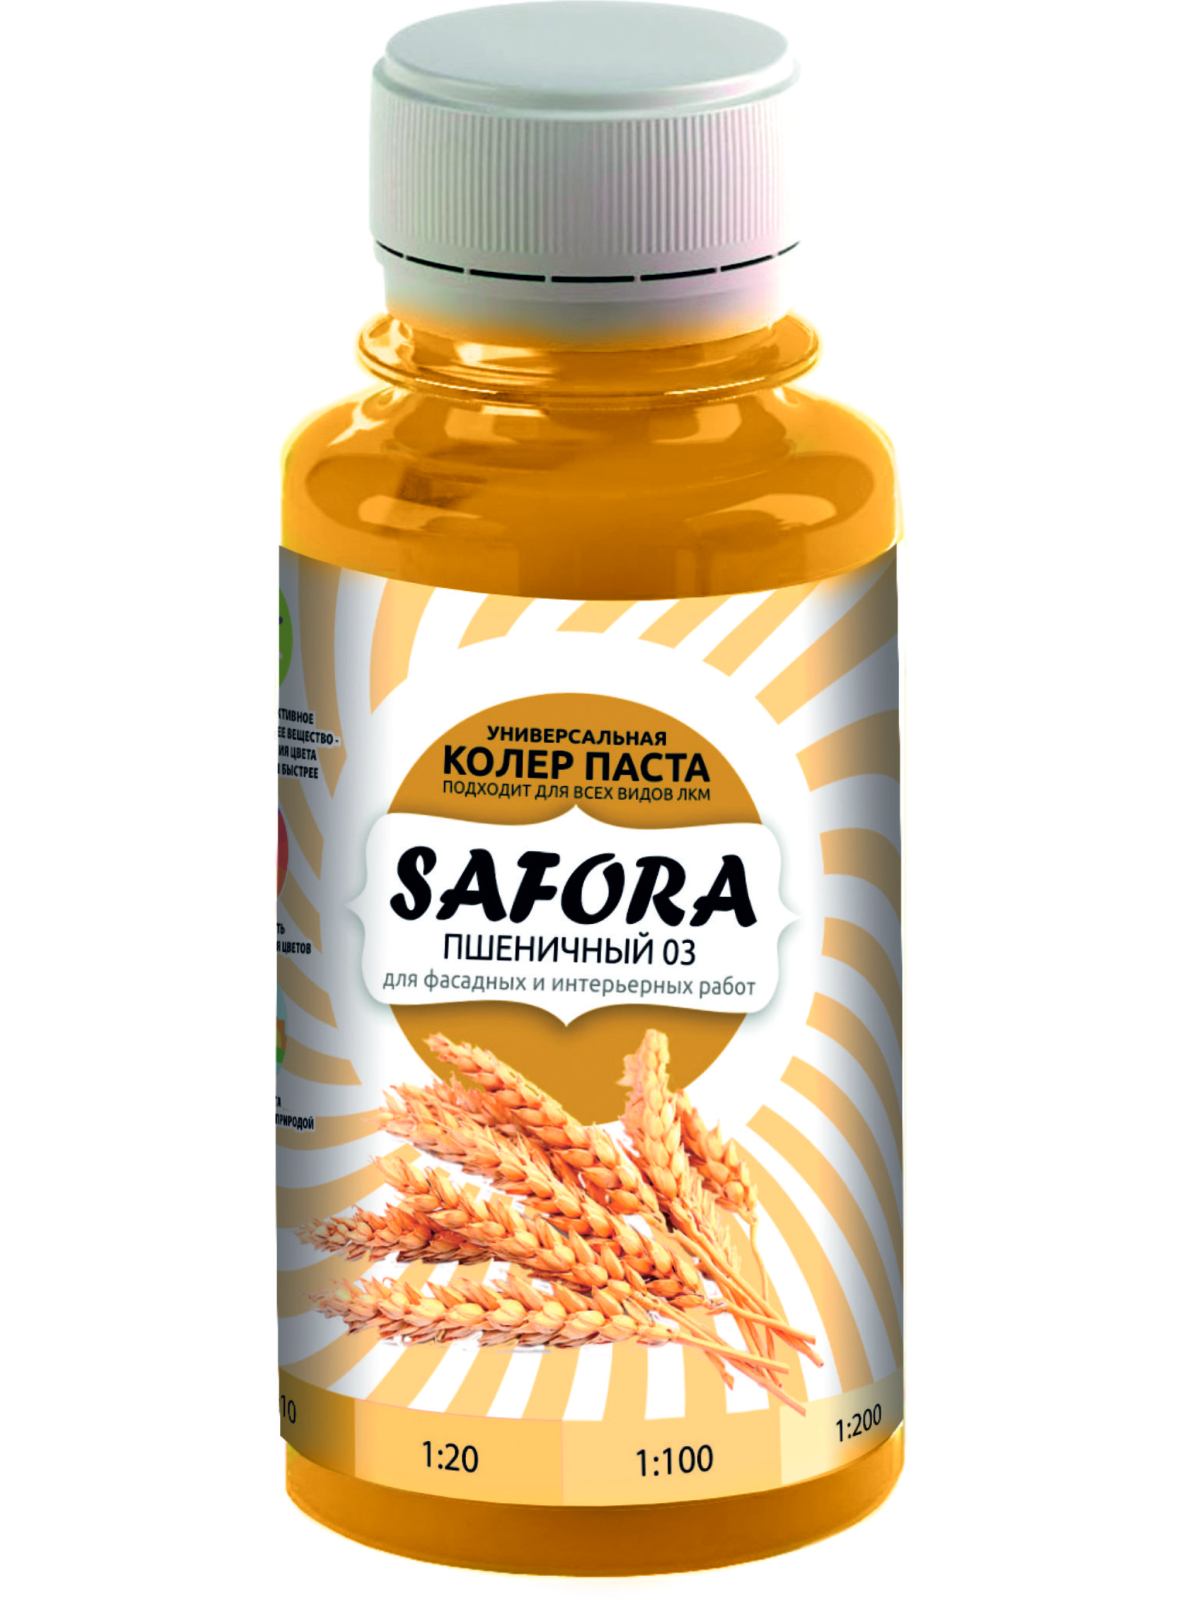 Колеровочная паста SAFORA 03 пшеничный, 100 мл колеровочная паста safora